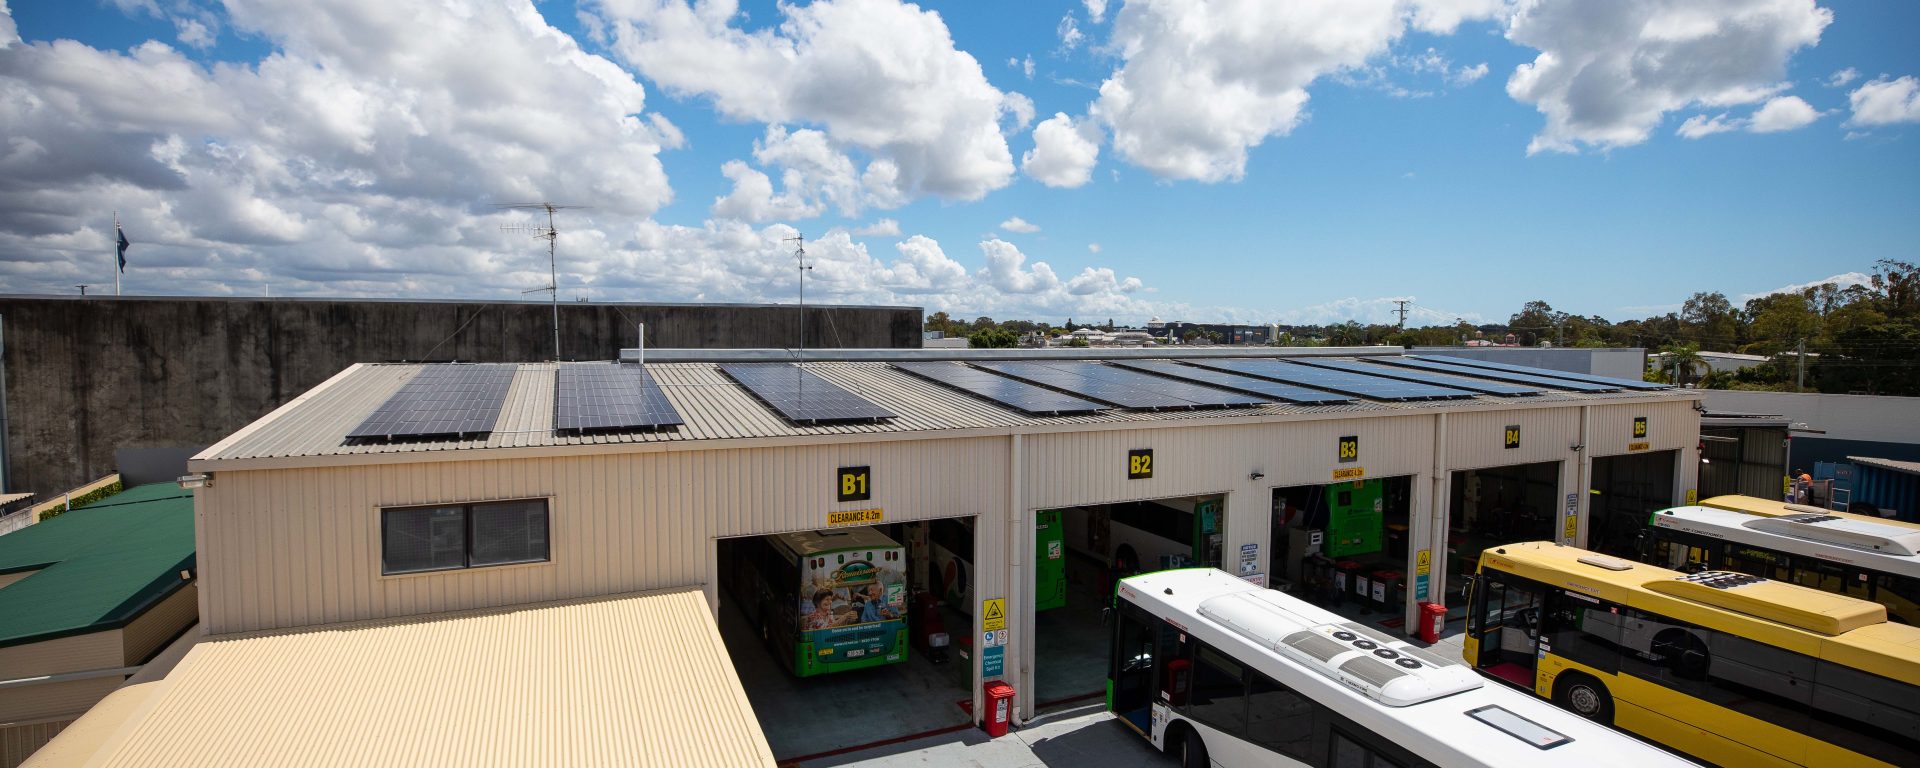 250 solar panels at Transdev’s Capalaba Depot, Brisbane